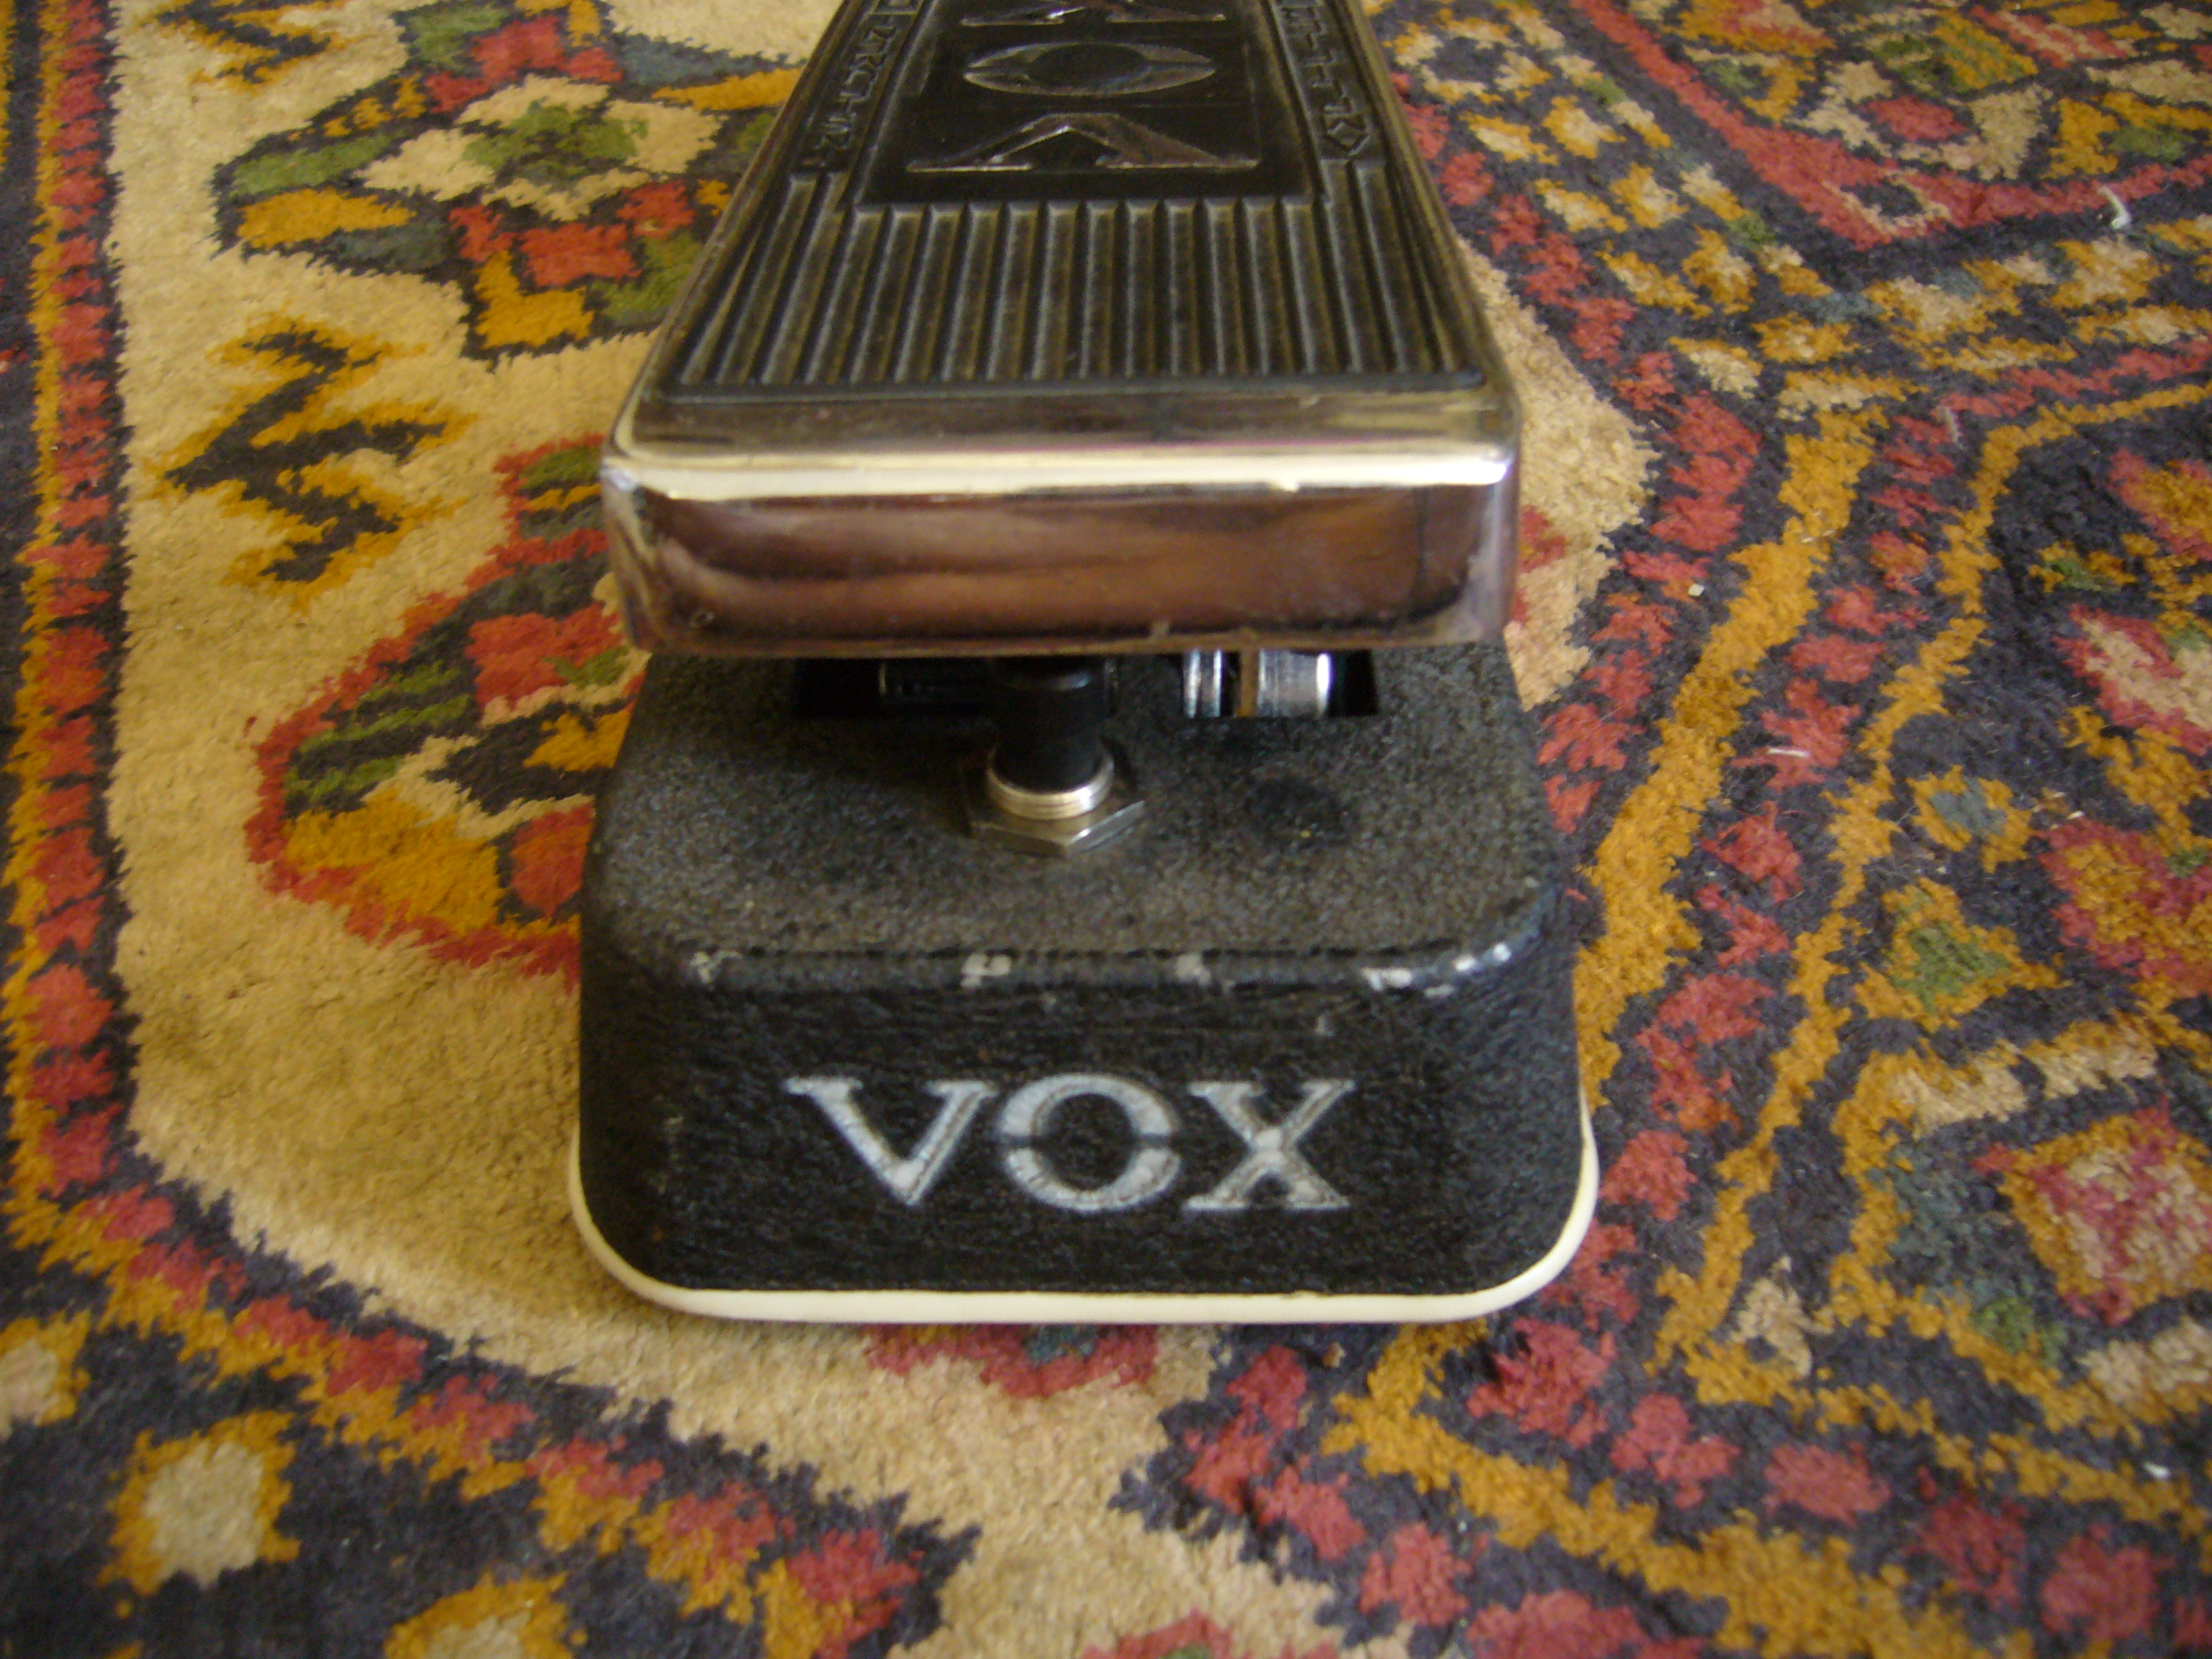 Vox wah wah pedal